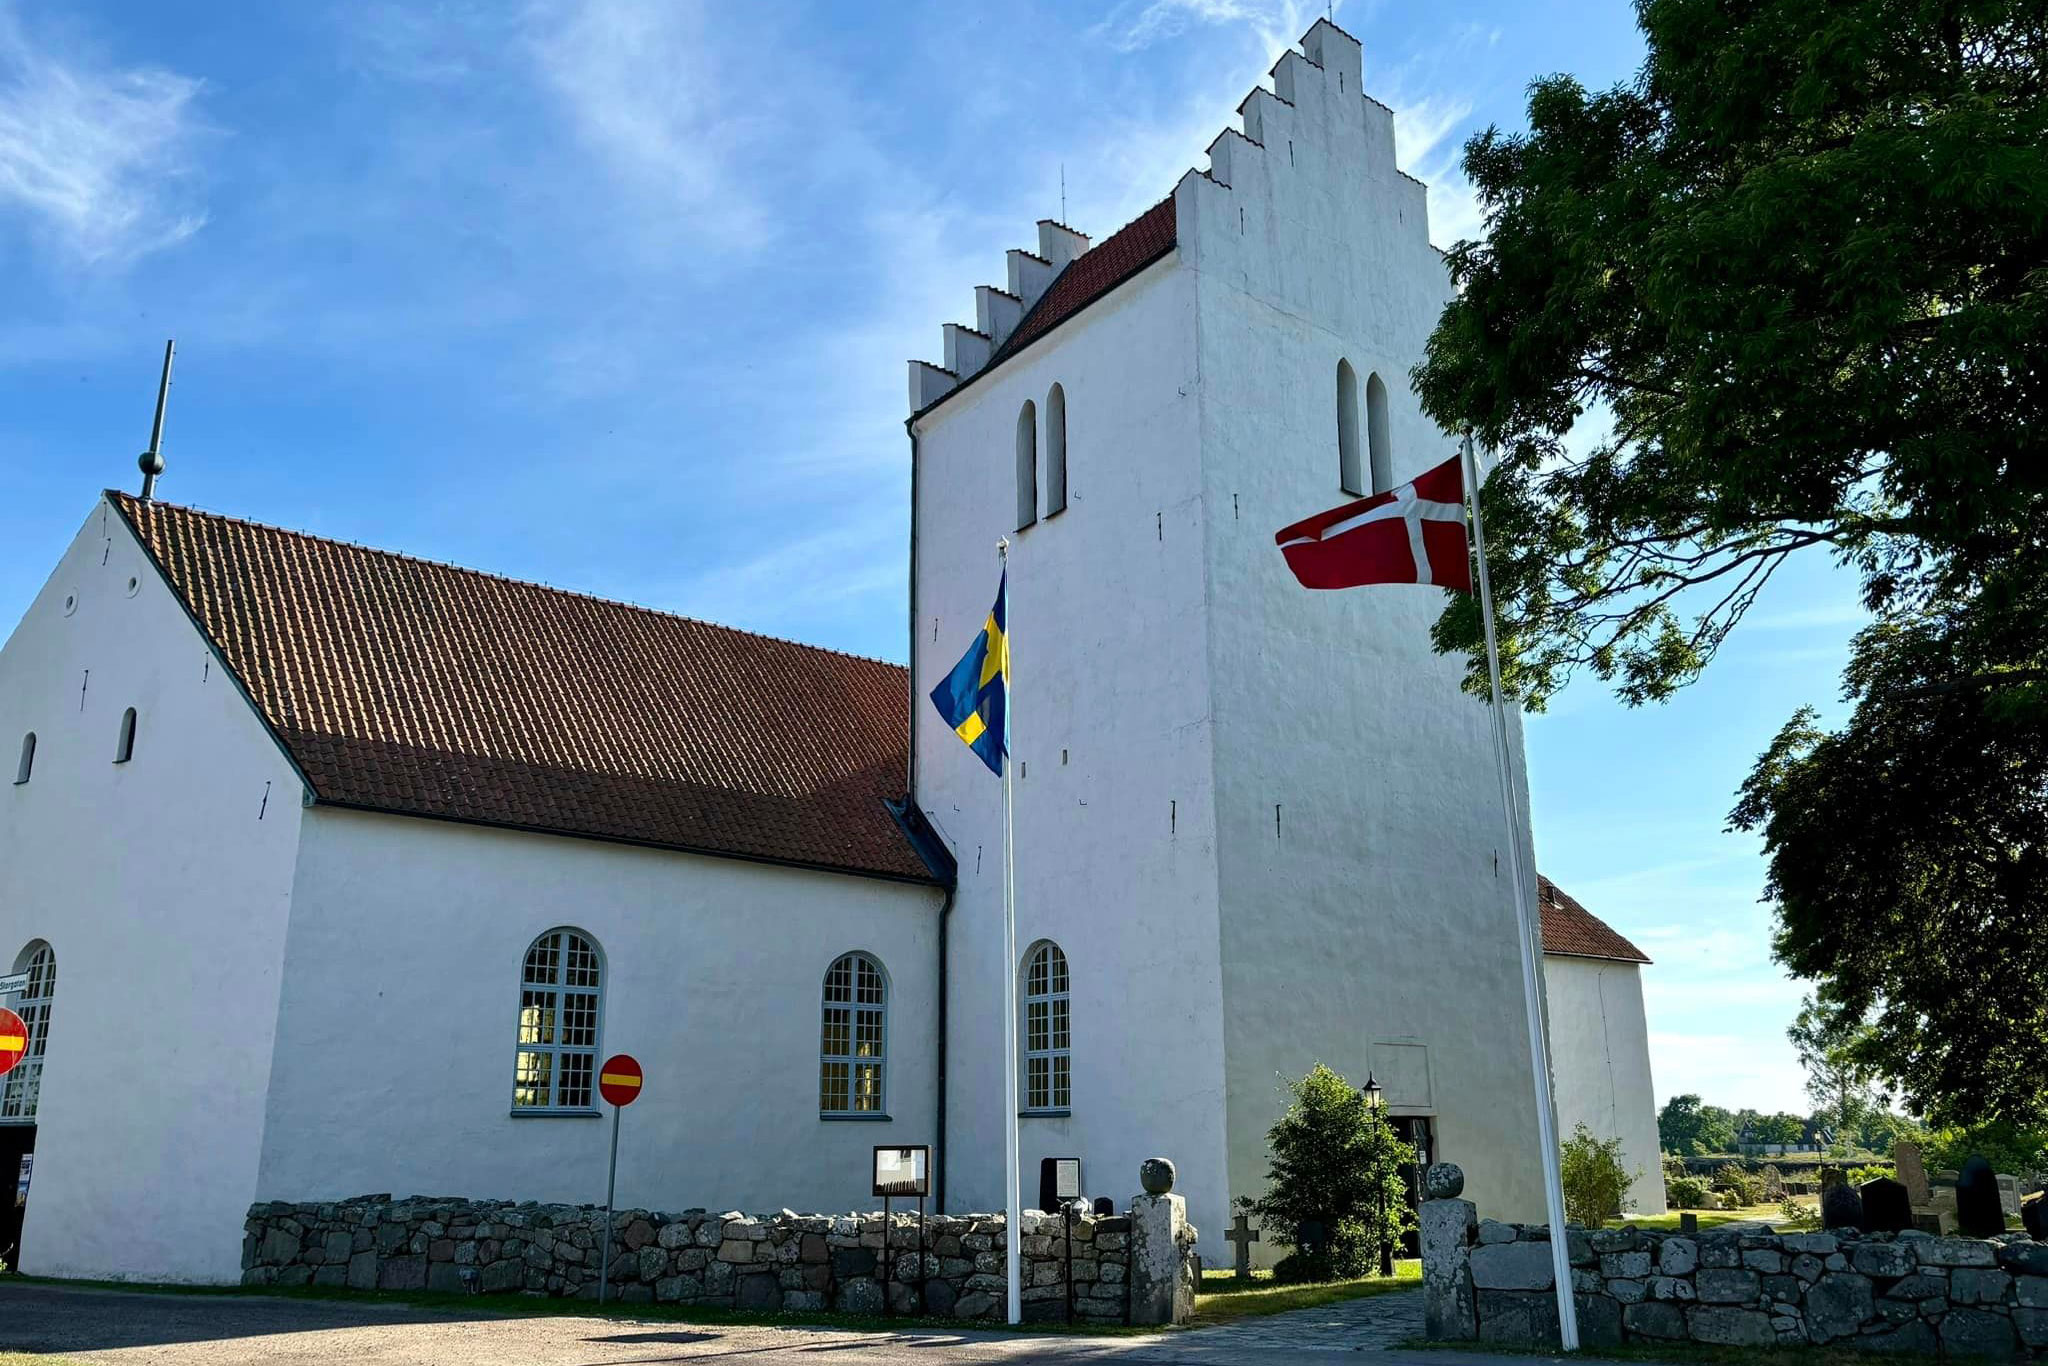 Vitkalkad kyrka med torn.